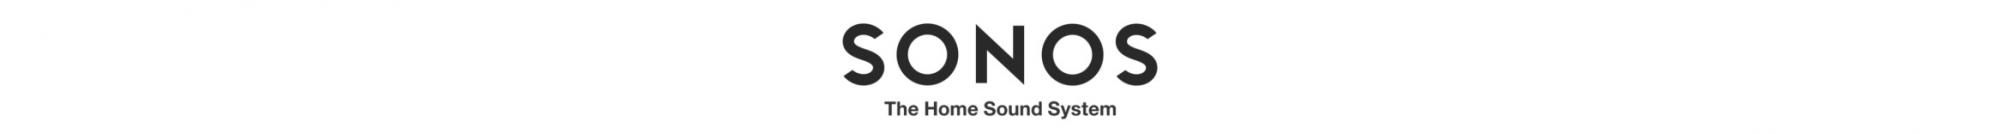 Sonos One SL prijenosni wifi airplay zvučnik 2 apple emitira glazbu bez mikrofona, višenamjenski zvuk u svakoj sobi, otporan na vlagu, stereo zvuk s povezana dva zvučnika u kupaonici, dva digitalna pojačala razreda D, visokotonski i niskotonski podesivi bas i visoko automatsko ažuriranje programske opreme.